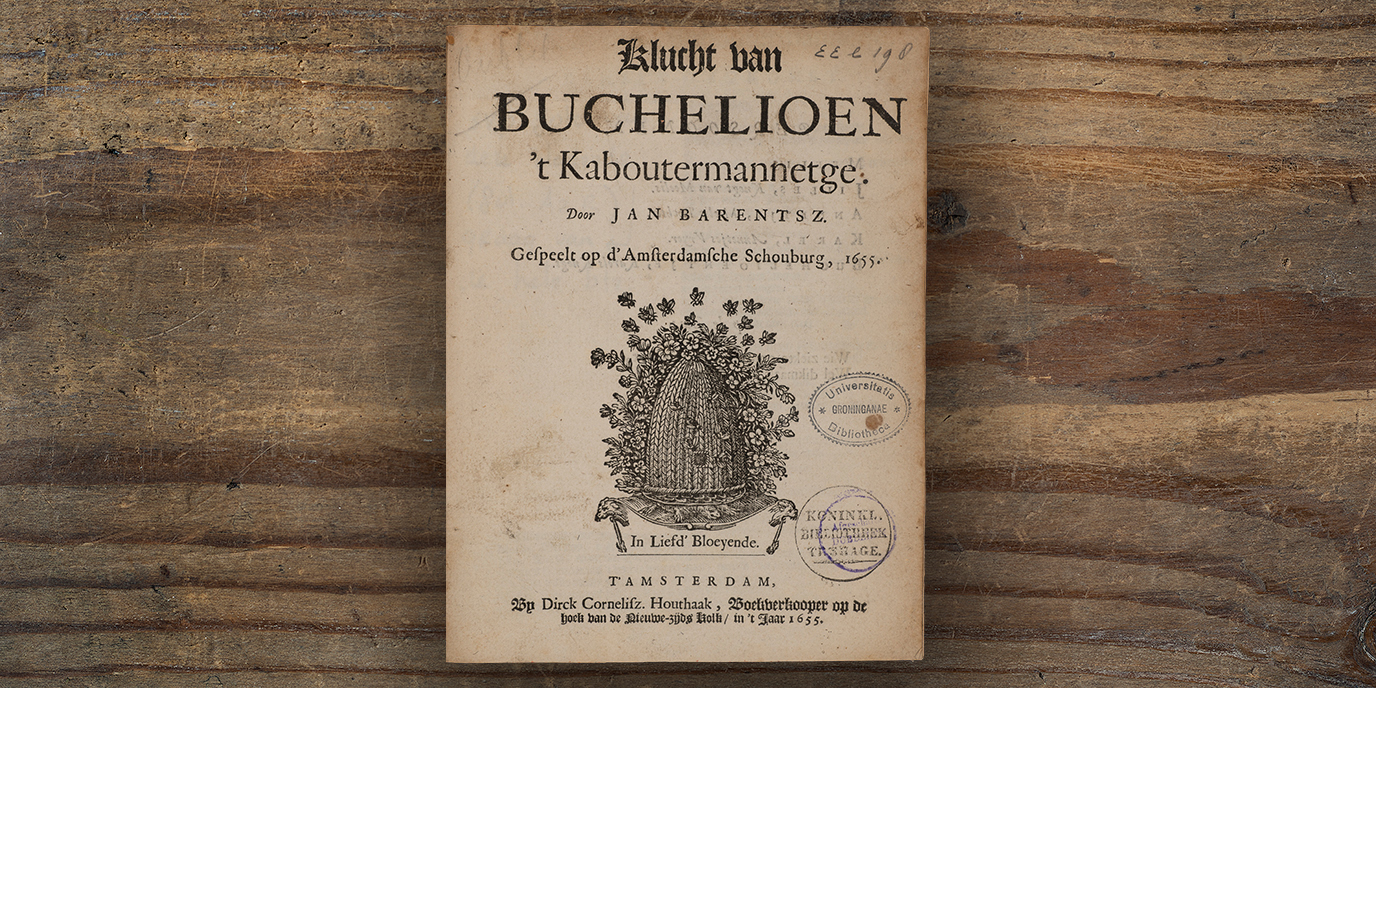 De “Klucht van Buchelioen ’t Kaboutermannetge” is geschreven door Jan Barentsz.[12] Barentsz. was vermoedelijk lid van de Amsterdamsche Kamer. Het titelblad bevat namelijk het blazoen van de Eerste Nederduytsche Academie en het devies van De Eglentier, de twee kamers waaruit de Amsterdamsche Kamer is ontstaan.[13]The “Klucht van Buchelioen ’t Kaboutermannetge” was written by Jan Barentsz.[12] Barentsz. was probably a member of the Amsterdamsche Kamer (Amsterdam Chamber), since the title page shows the arms of the Eerste Nederduytsche Academie (First Dutch Academy) and the motto of De Eglentier (The Sweet Briar), the two chambers from which the Amsterdamsche Kamer arose.[13]